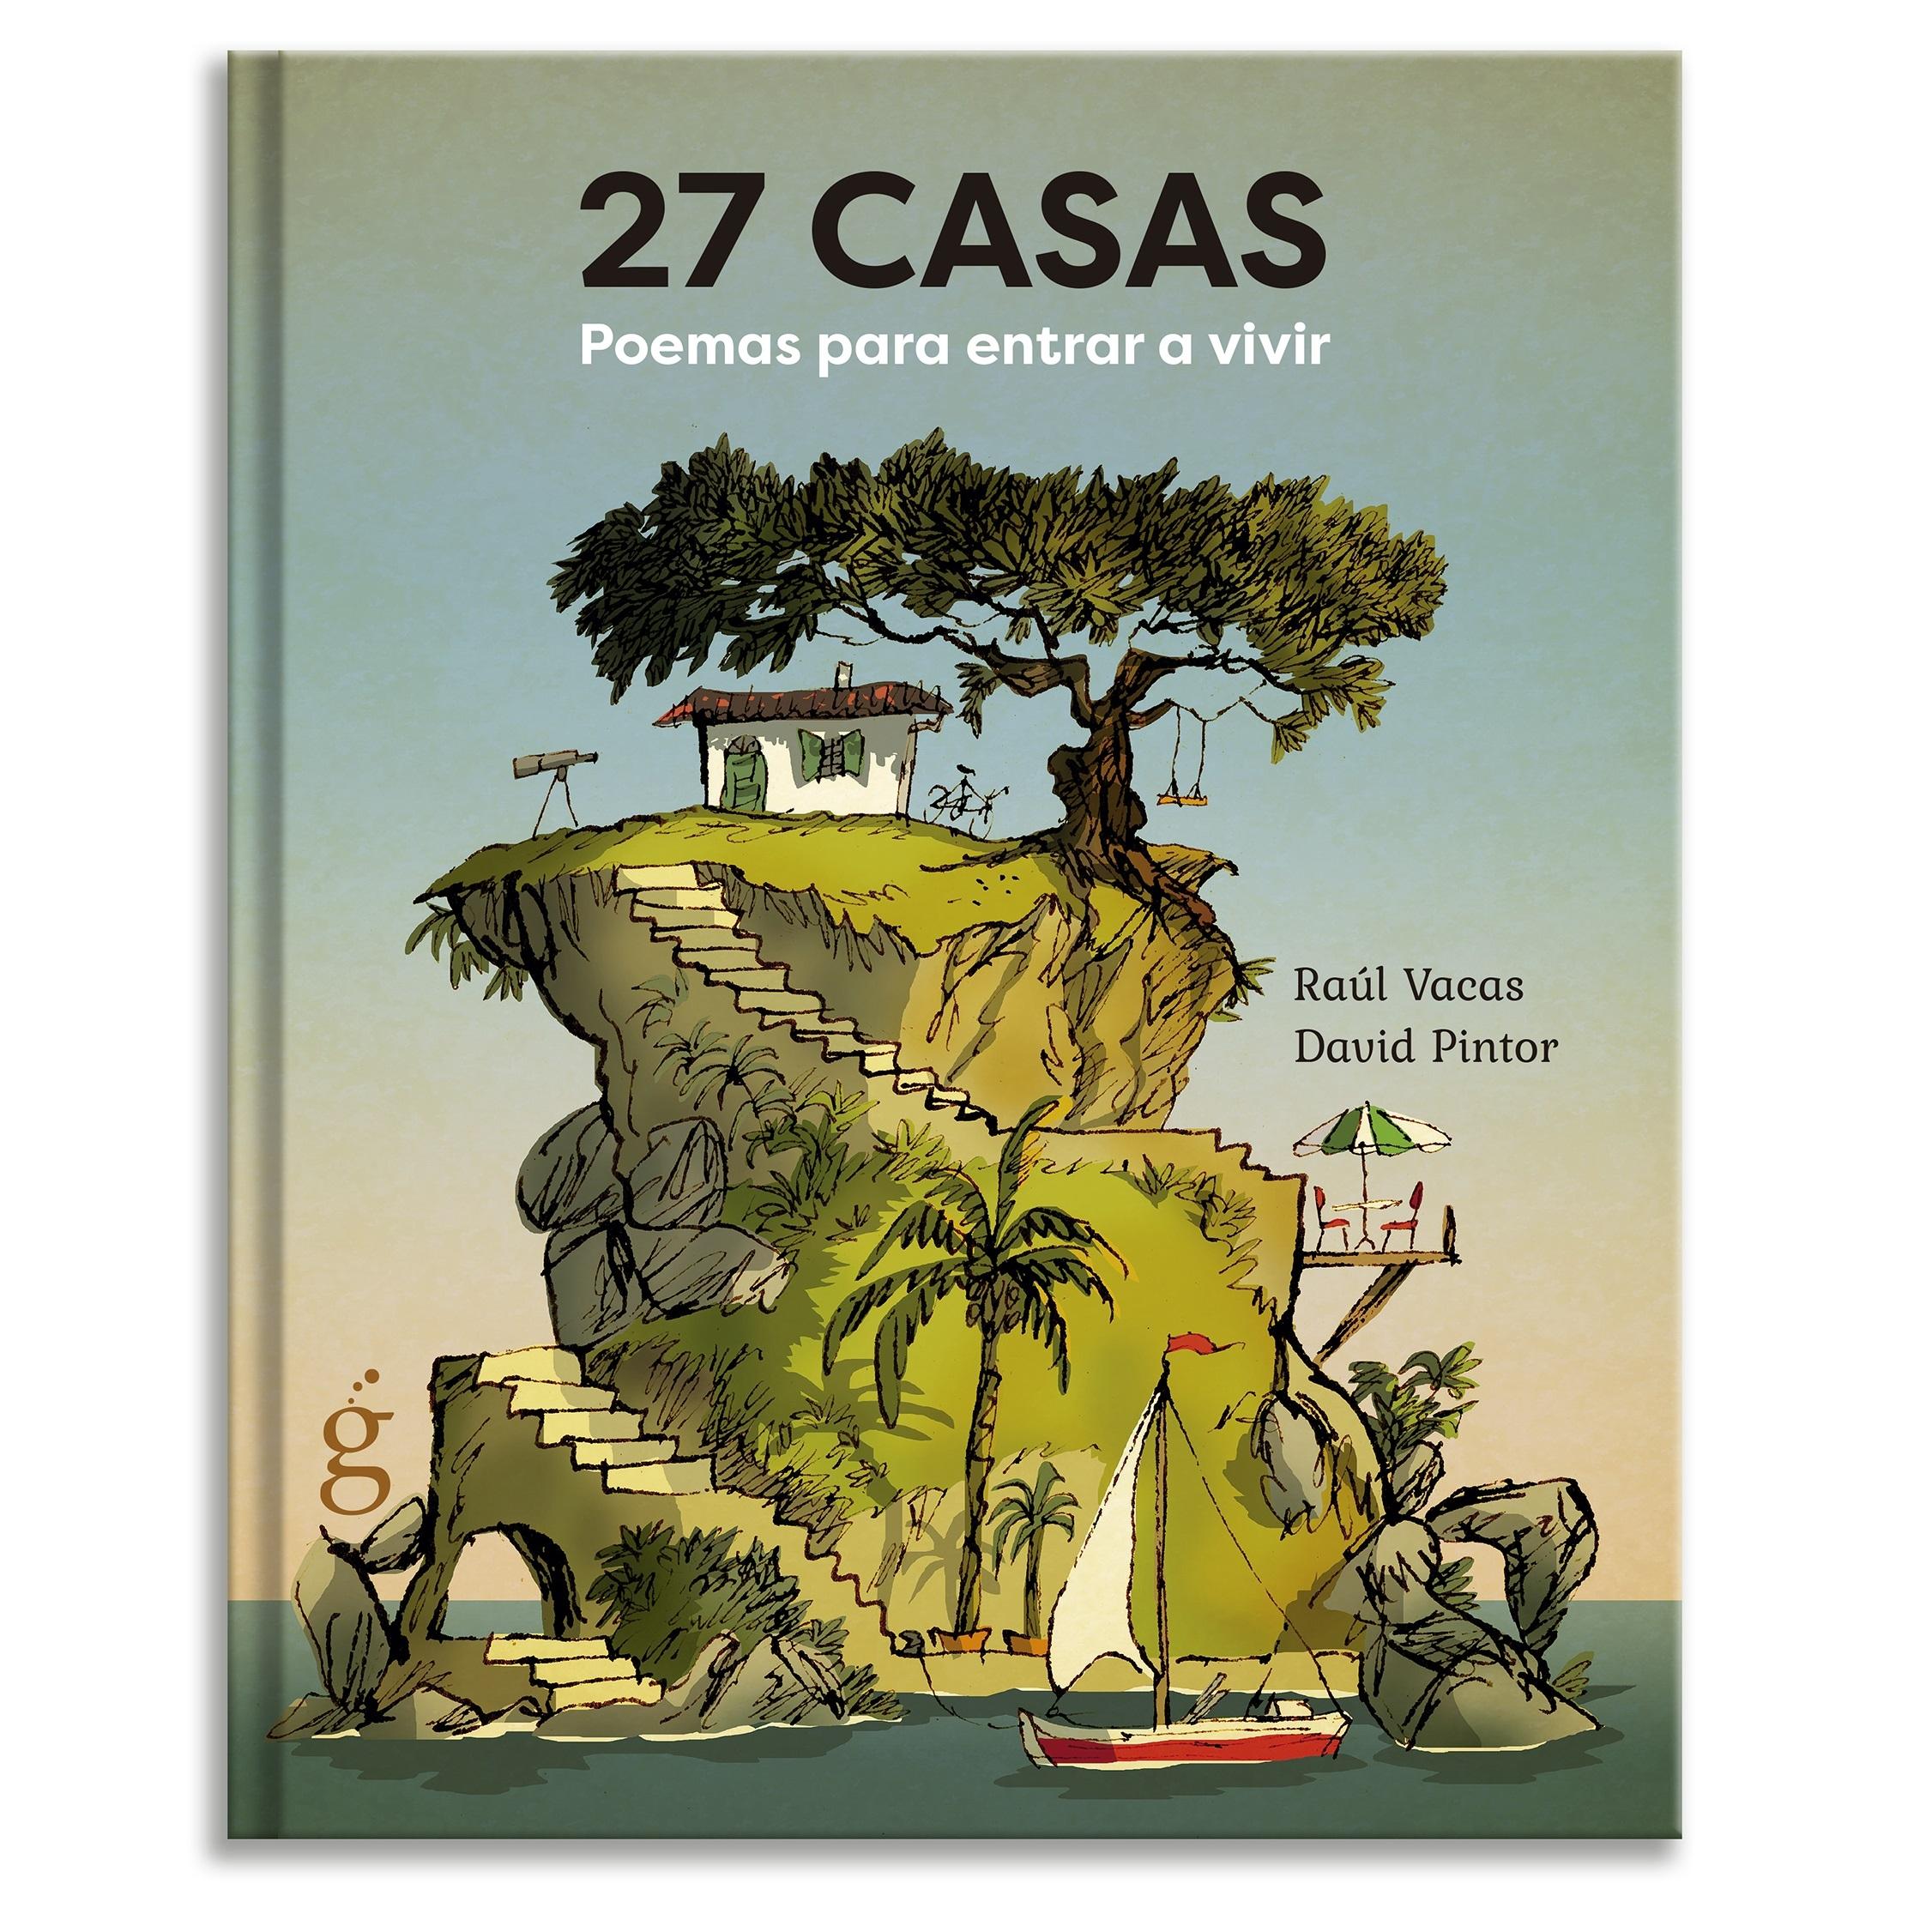 27 Casas "Poemas para entrar a vivir"